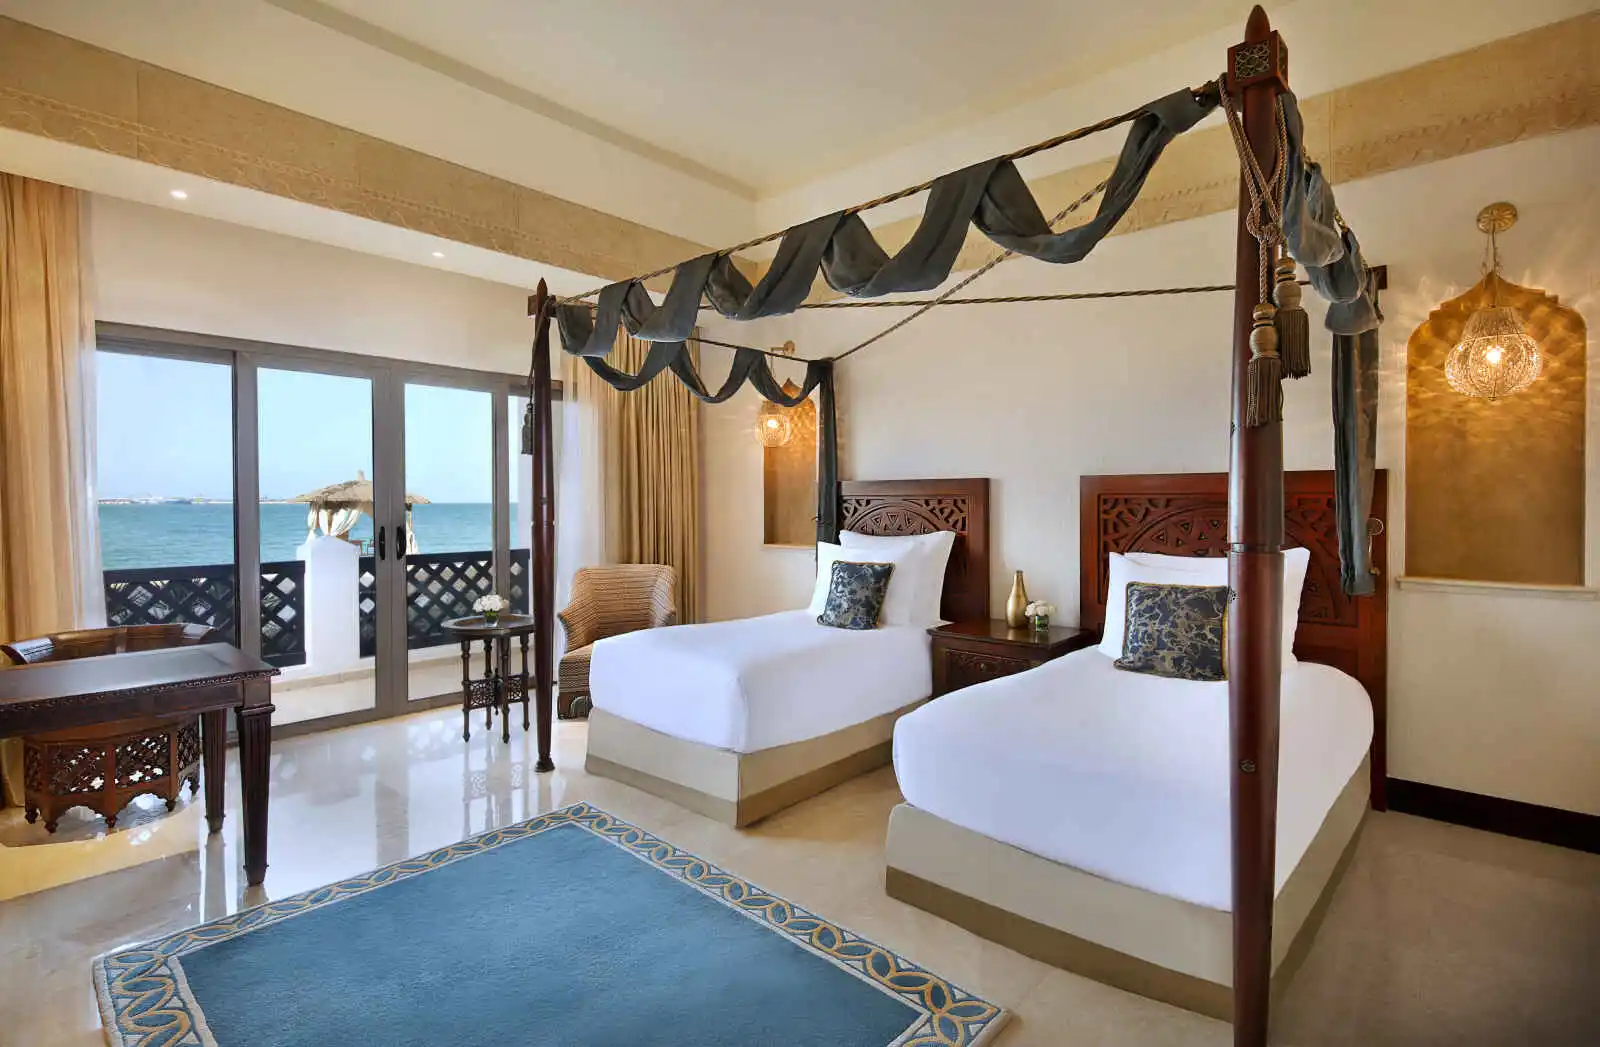 Chambre lits jumeaux, Sharq Village & Spa, A Ritz-Carlton Hotel, Doha, Qatar